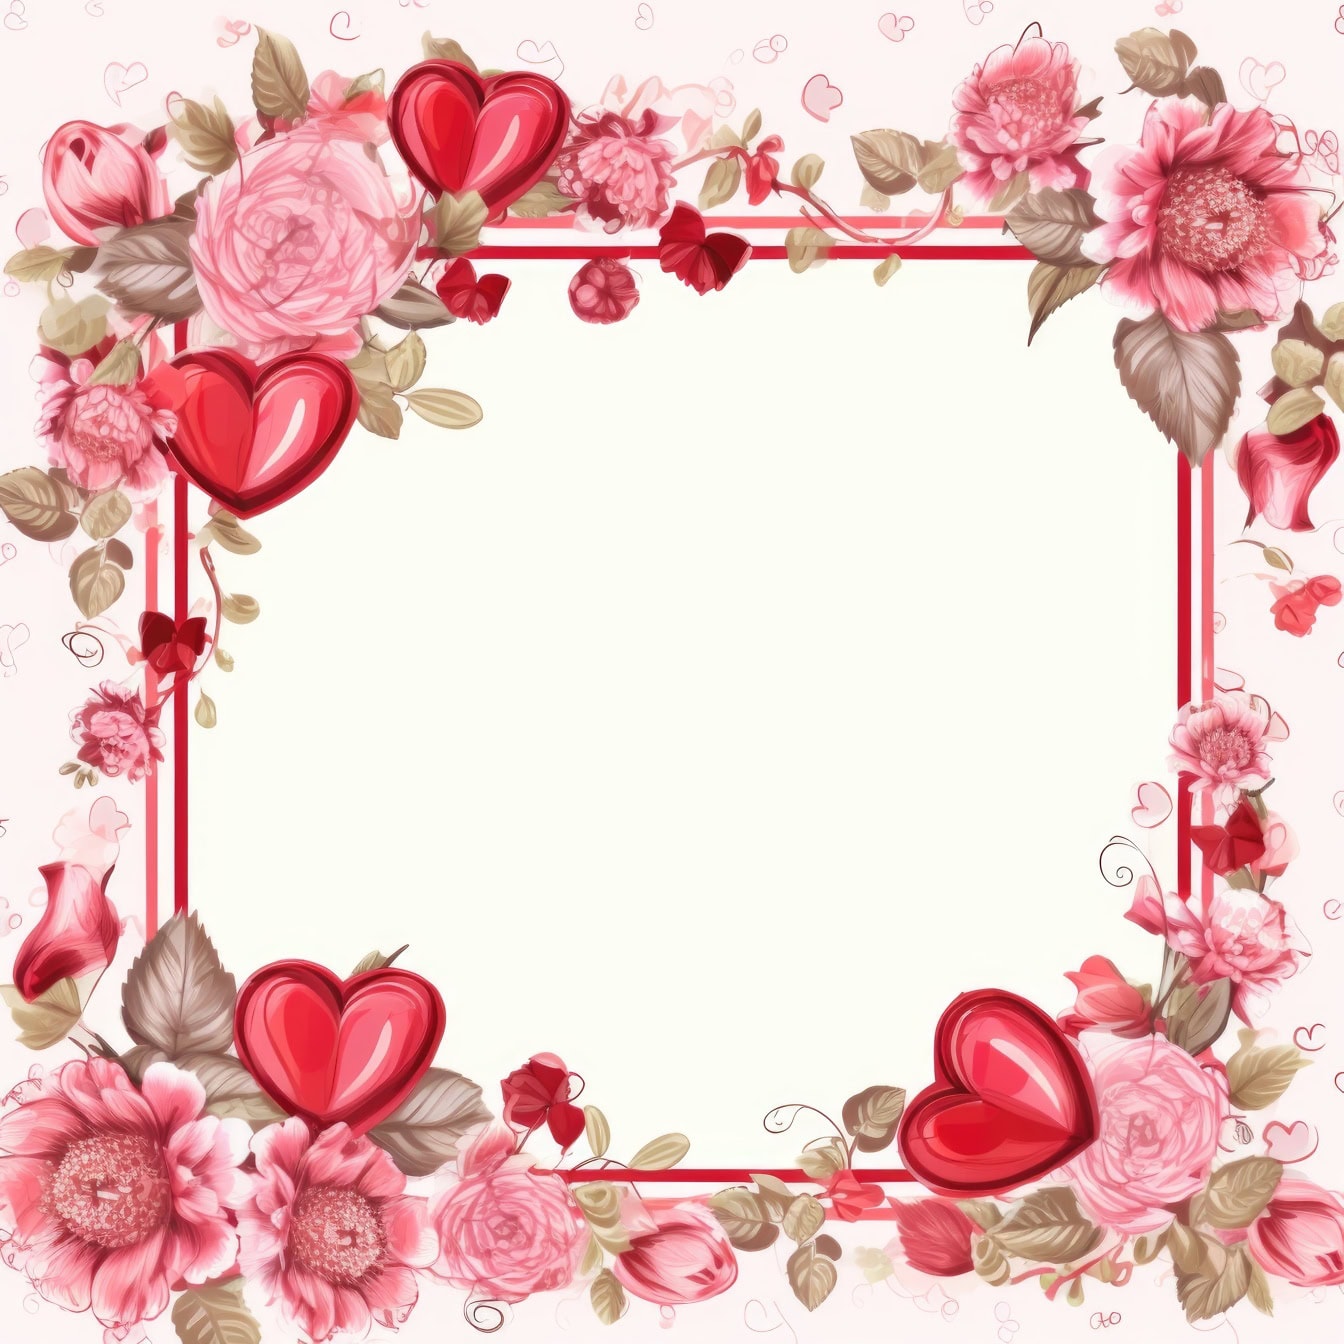 Carte de voeux romantique avec cadre carré avec des fleurs roses et des cœurs